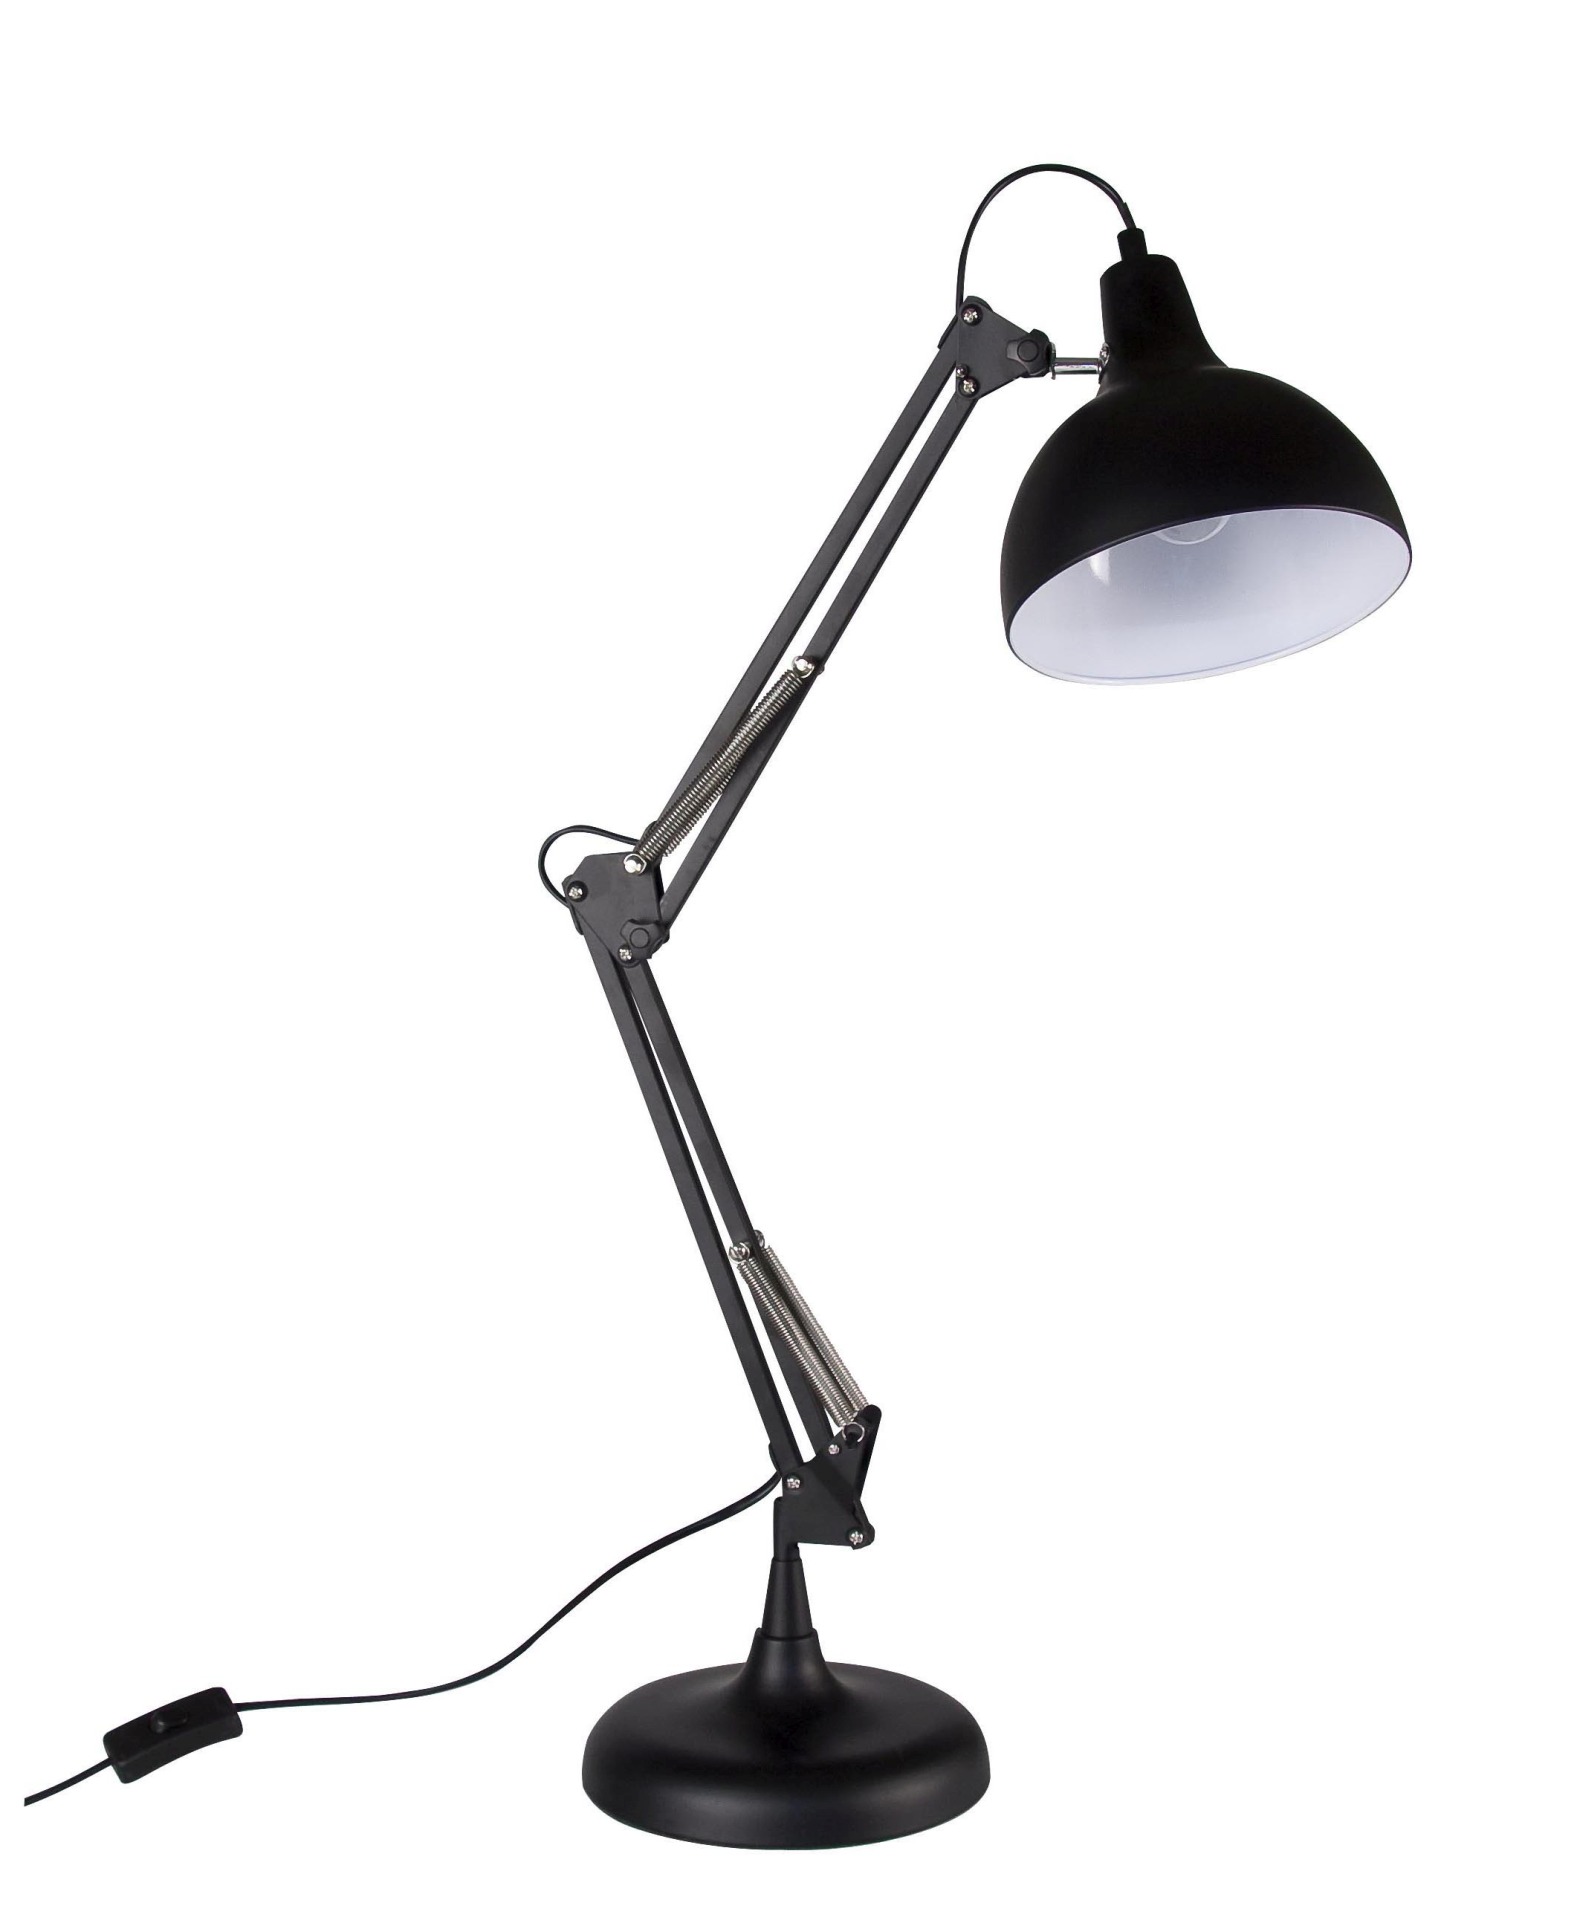 Die Tischleuchte Small überzeugt mit ihrem klassischen Design. Gefertigt wurde sie aus Metall, welches einen schwarzen Farbton besitzt. Die Lampe verfügt über eine Lichtquelle. Die Lampe besitzt eine Höhe von 75 cm.